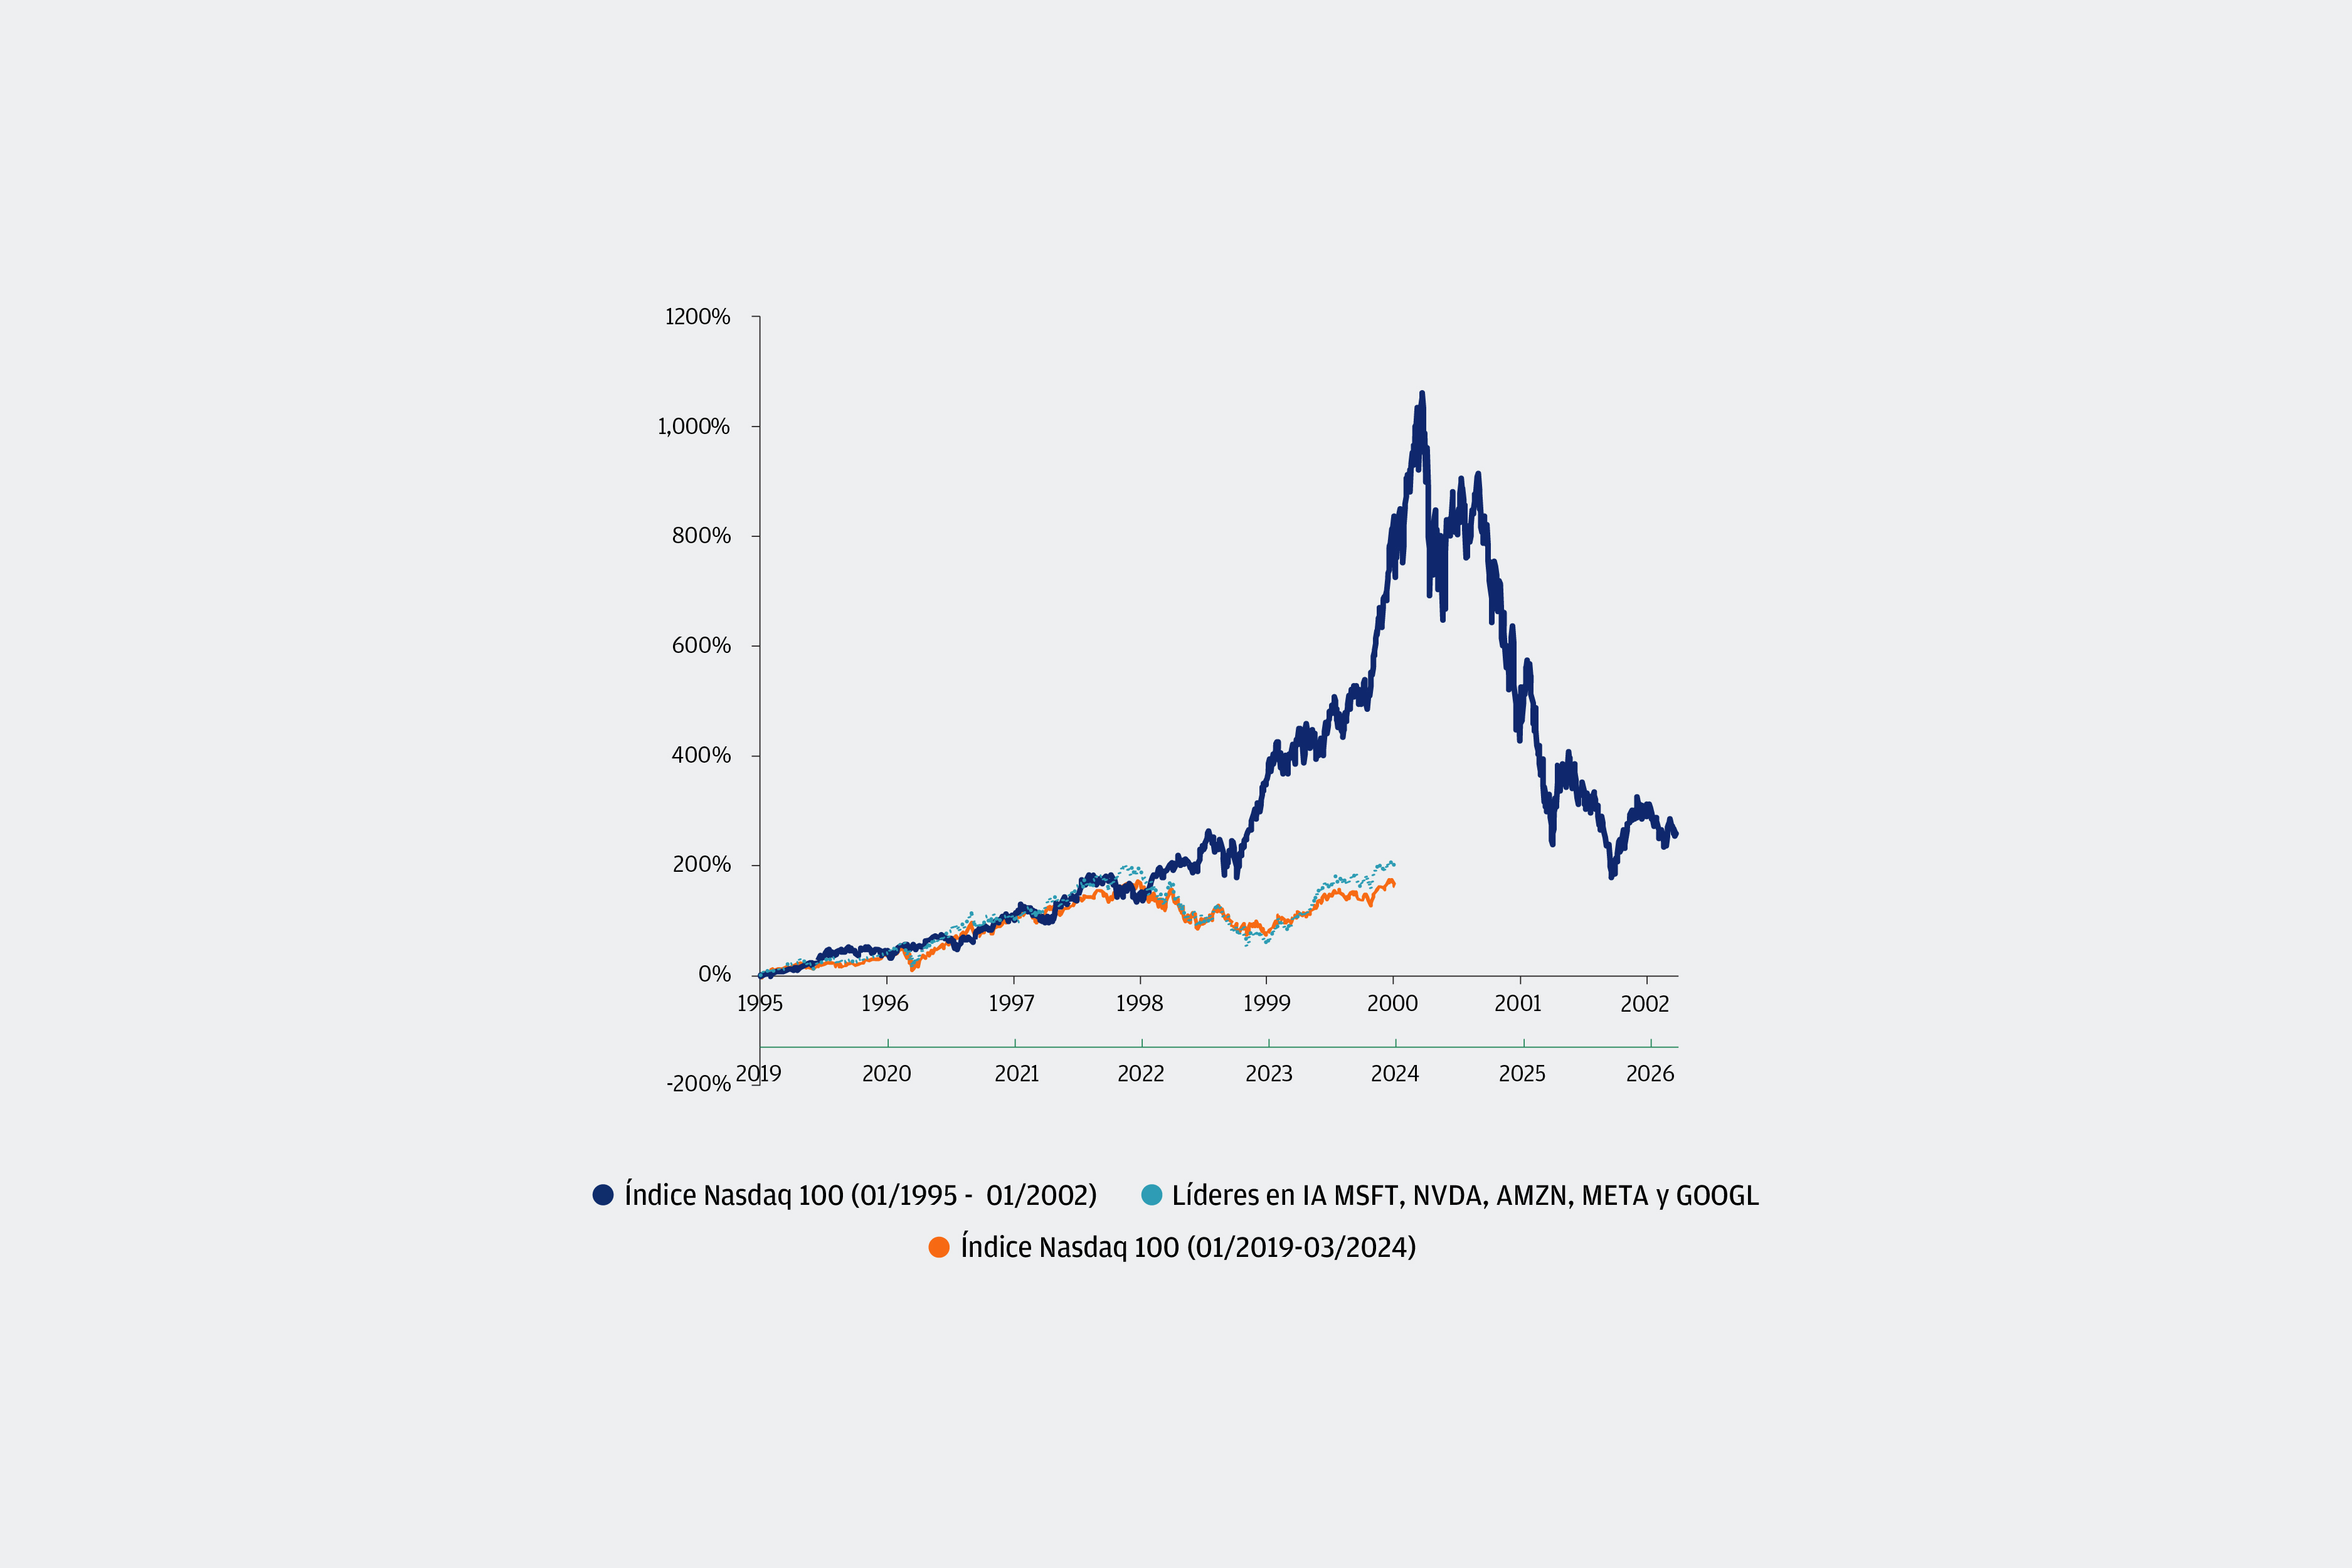 Este gráfico muestra el desempeño de los precios del Índice Nasdaq 100 entre 1995 y 2002 y entre 2019 y la actualidad, así como el de los líderes actuales en inteligencia artificial (IA) desde 2019 (Microsoft, Nvidia, Amazon, Meta y Alphabet). El objetivo es comparar ambos períodos. 